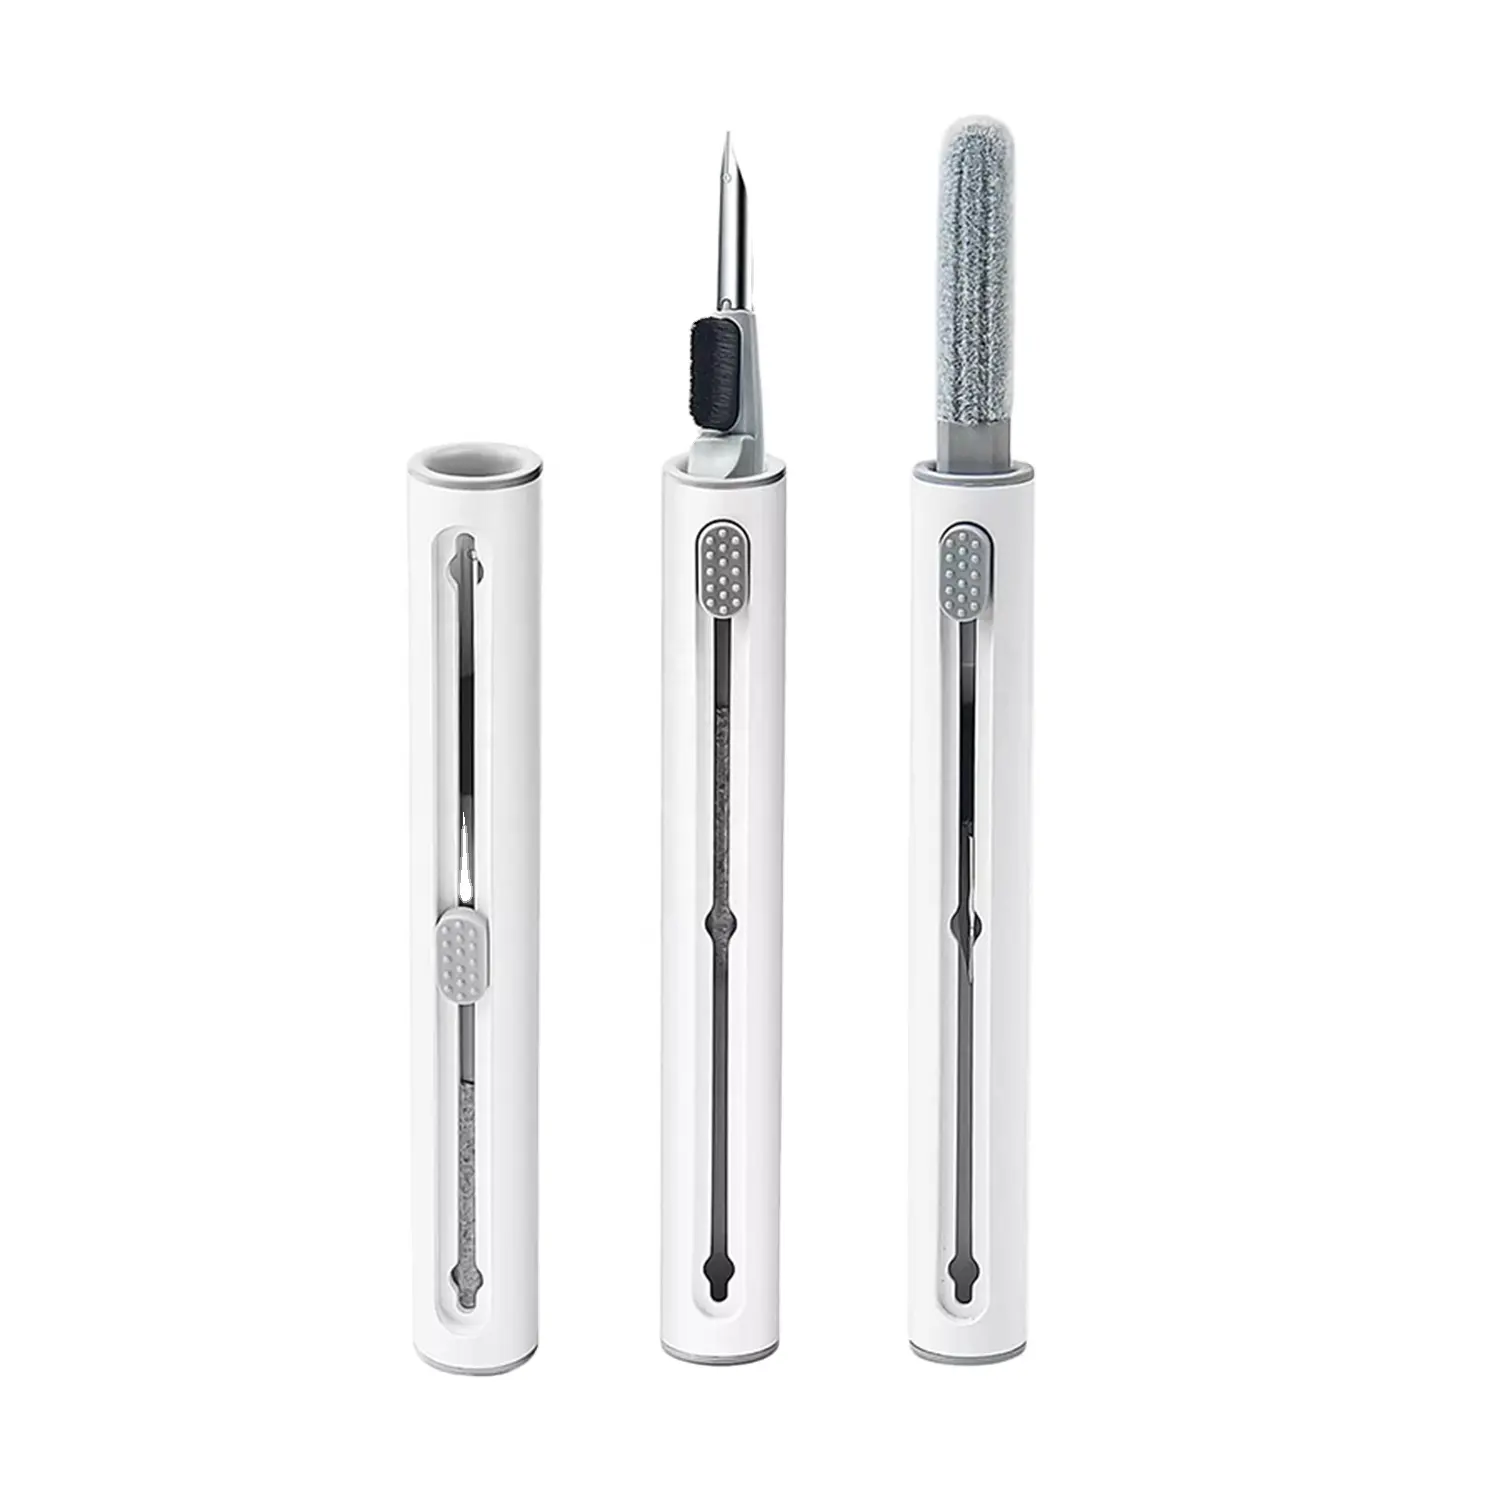 ब्लूटूथ इयरफ़ोन केस के लिए सॉफ्ट ब्रश फ़्लॉकिंग स्पंज के साथ एयरपॉड्स प्रो 1 2 3 मल्टी-फंक्शन क्लीनिंग पेन के लिए क्लीनर किट